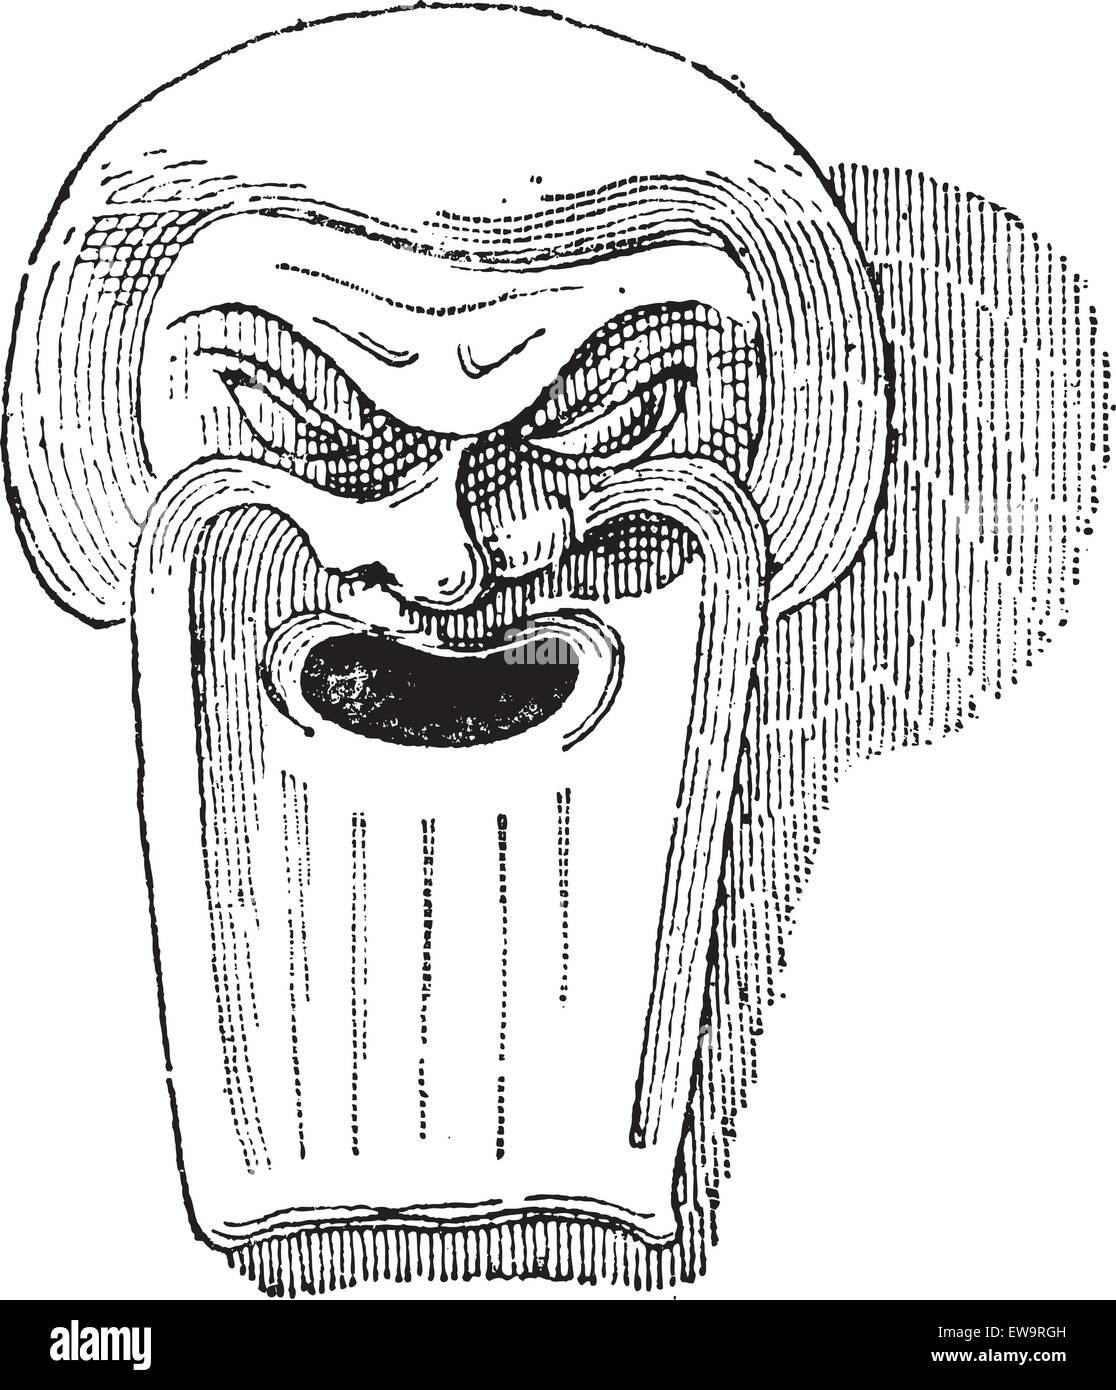 Masque à l'argile grec, vintage engraved illustration. Dictionnaire des mots et des choses - Larive et Fleury - 1895 Illustration de Vecteur